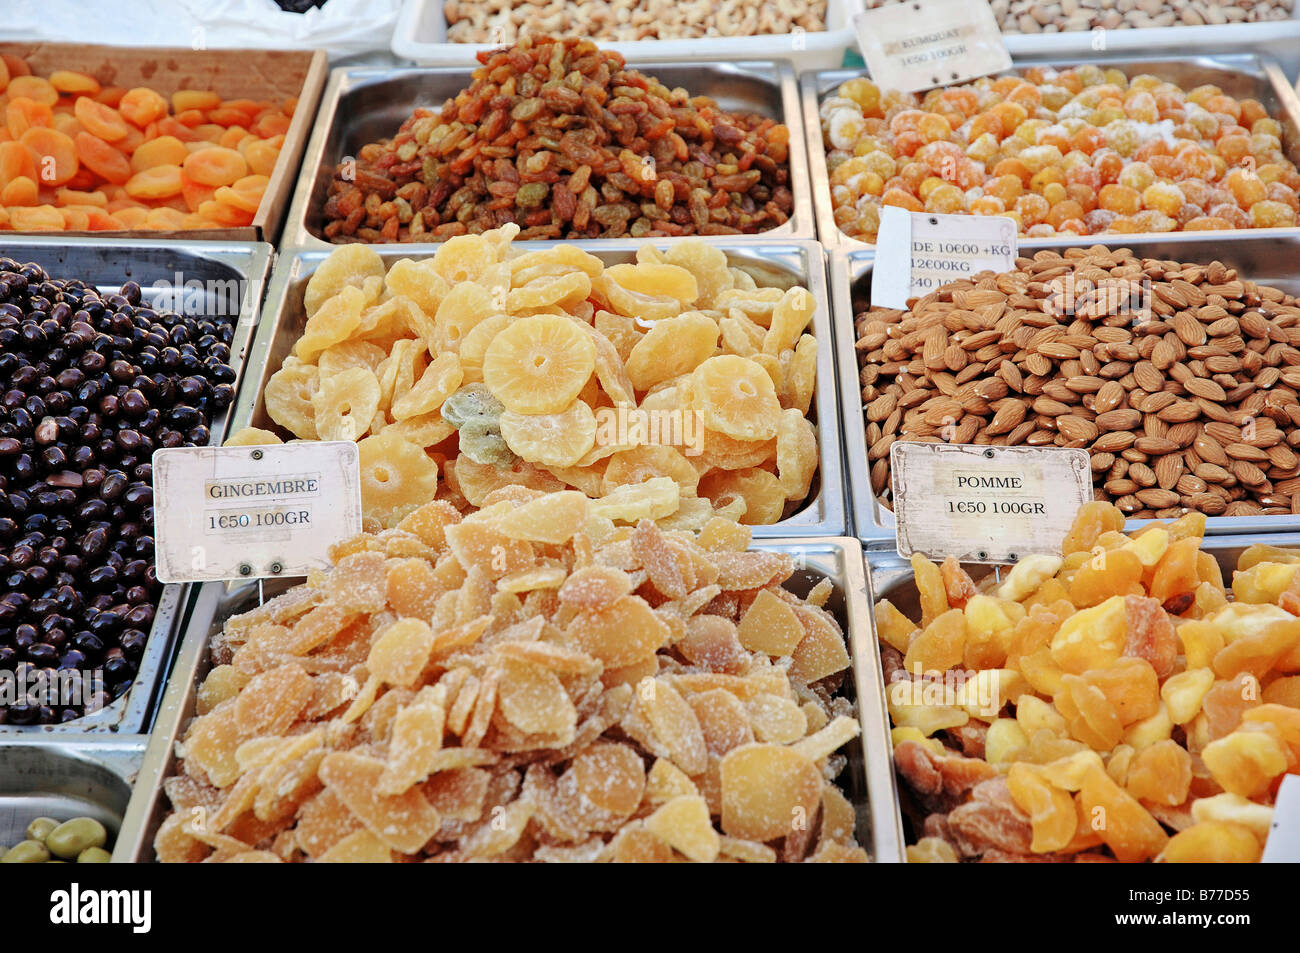 Pressione di stallo di mercato con la frutta secca e le mandorle, Sault, Vaucluse, Provence-Alpes-Côte d'Azur, in Francia Meridionale, Europa Foto Stock